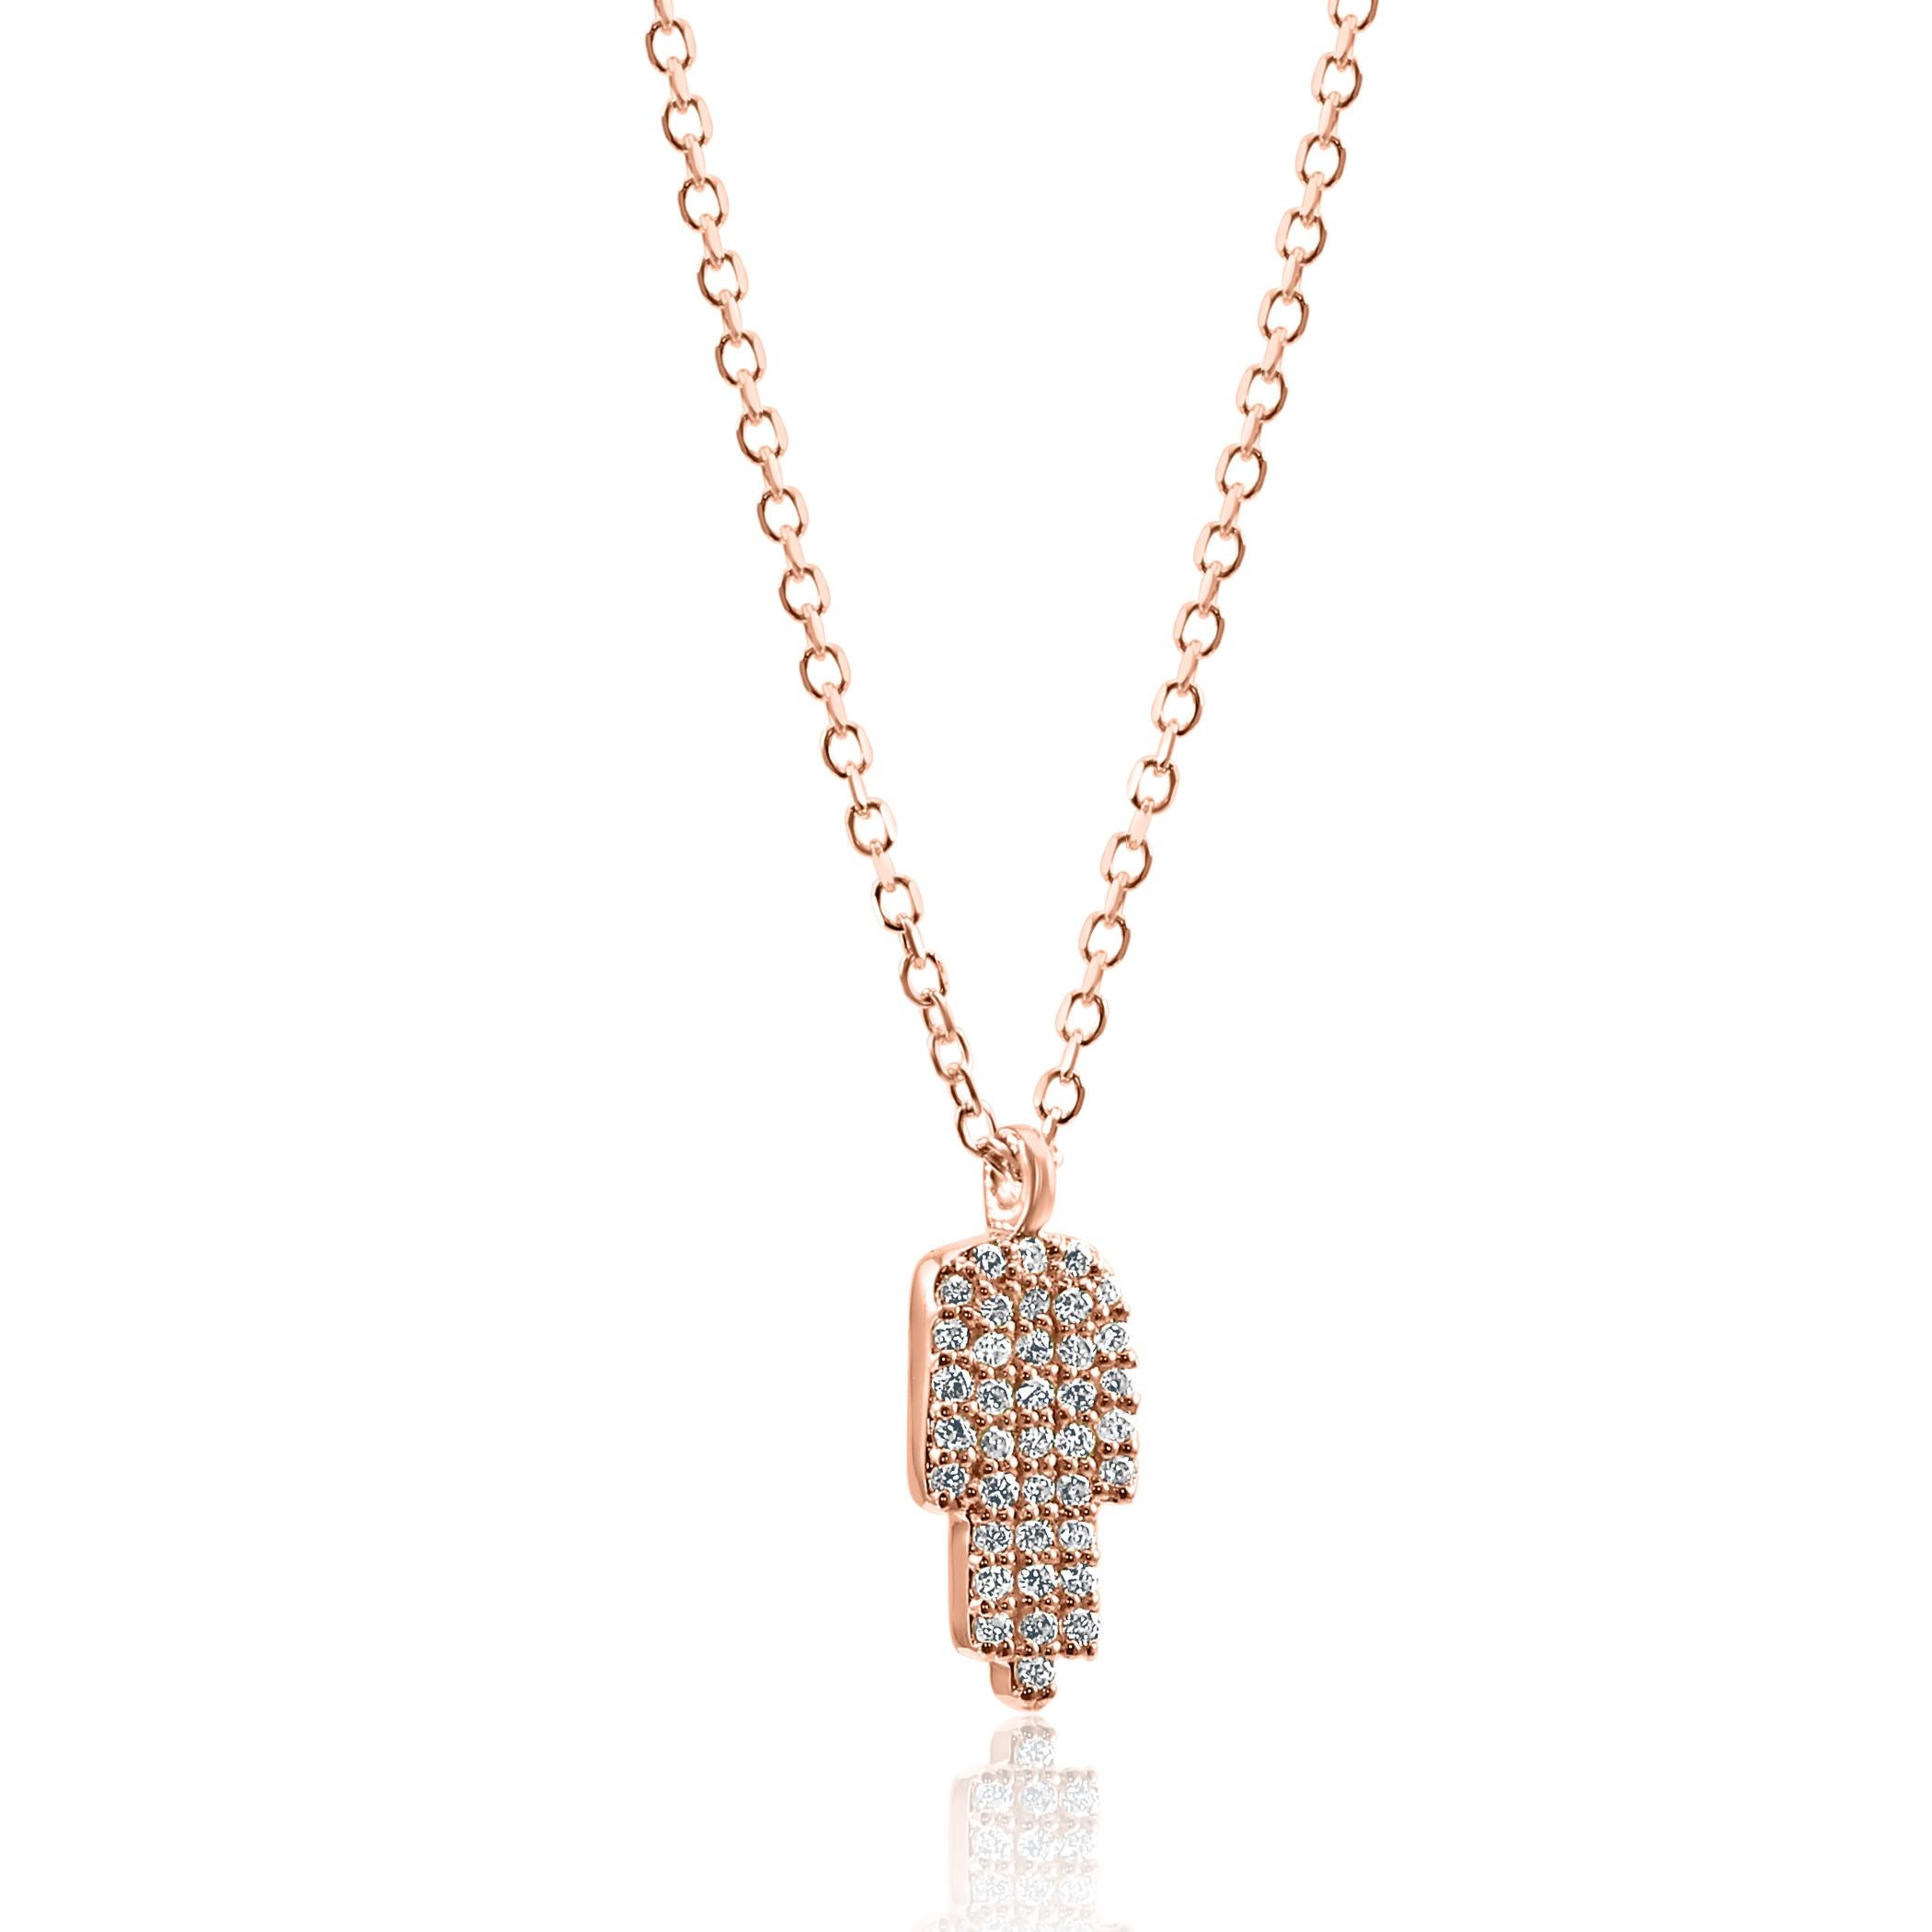 Le collier à pendentif Hamsa en or rose est à la fois élégant et symbolique.

La pièce maîtresse de ce collier est le pendentif Hamsa, un symbole reconnu dans diverses cultures pour ses qualités protectrices et auspicieuses. 

La surface du Hamsa